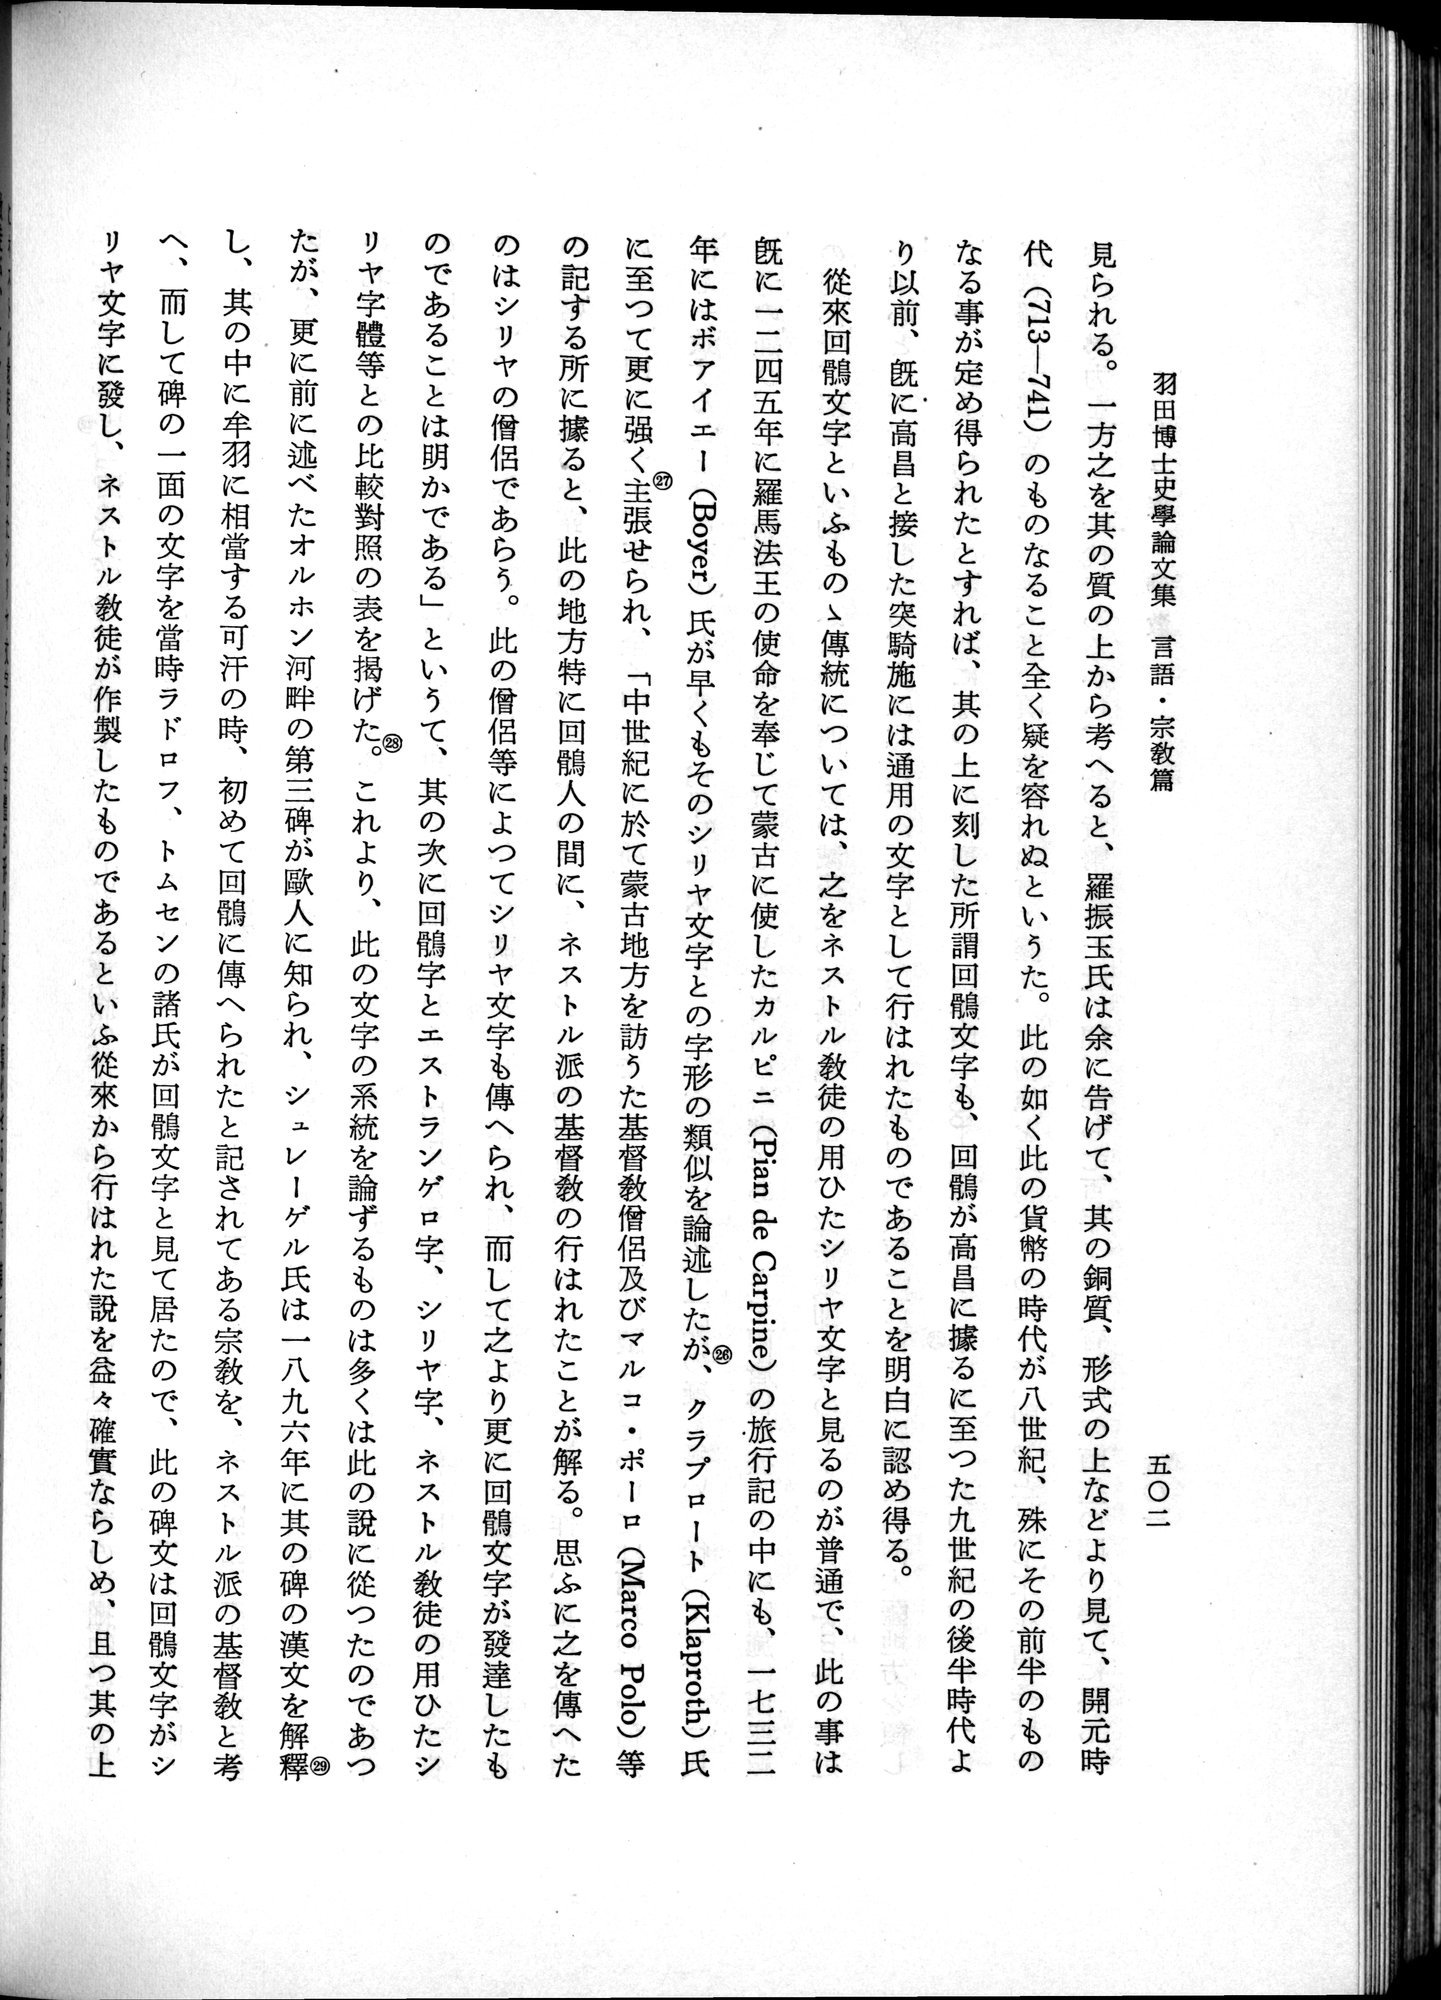 羽田博士史学論文集 : vol.2 / Page 564 (Grayscale High Resolution Image)